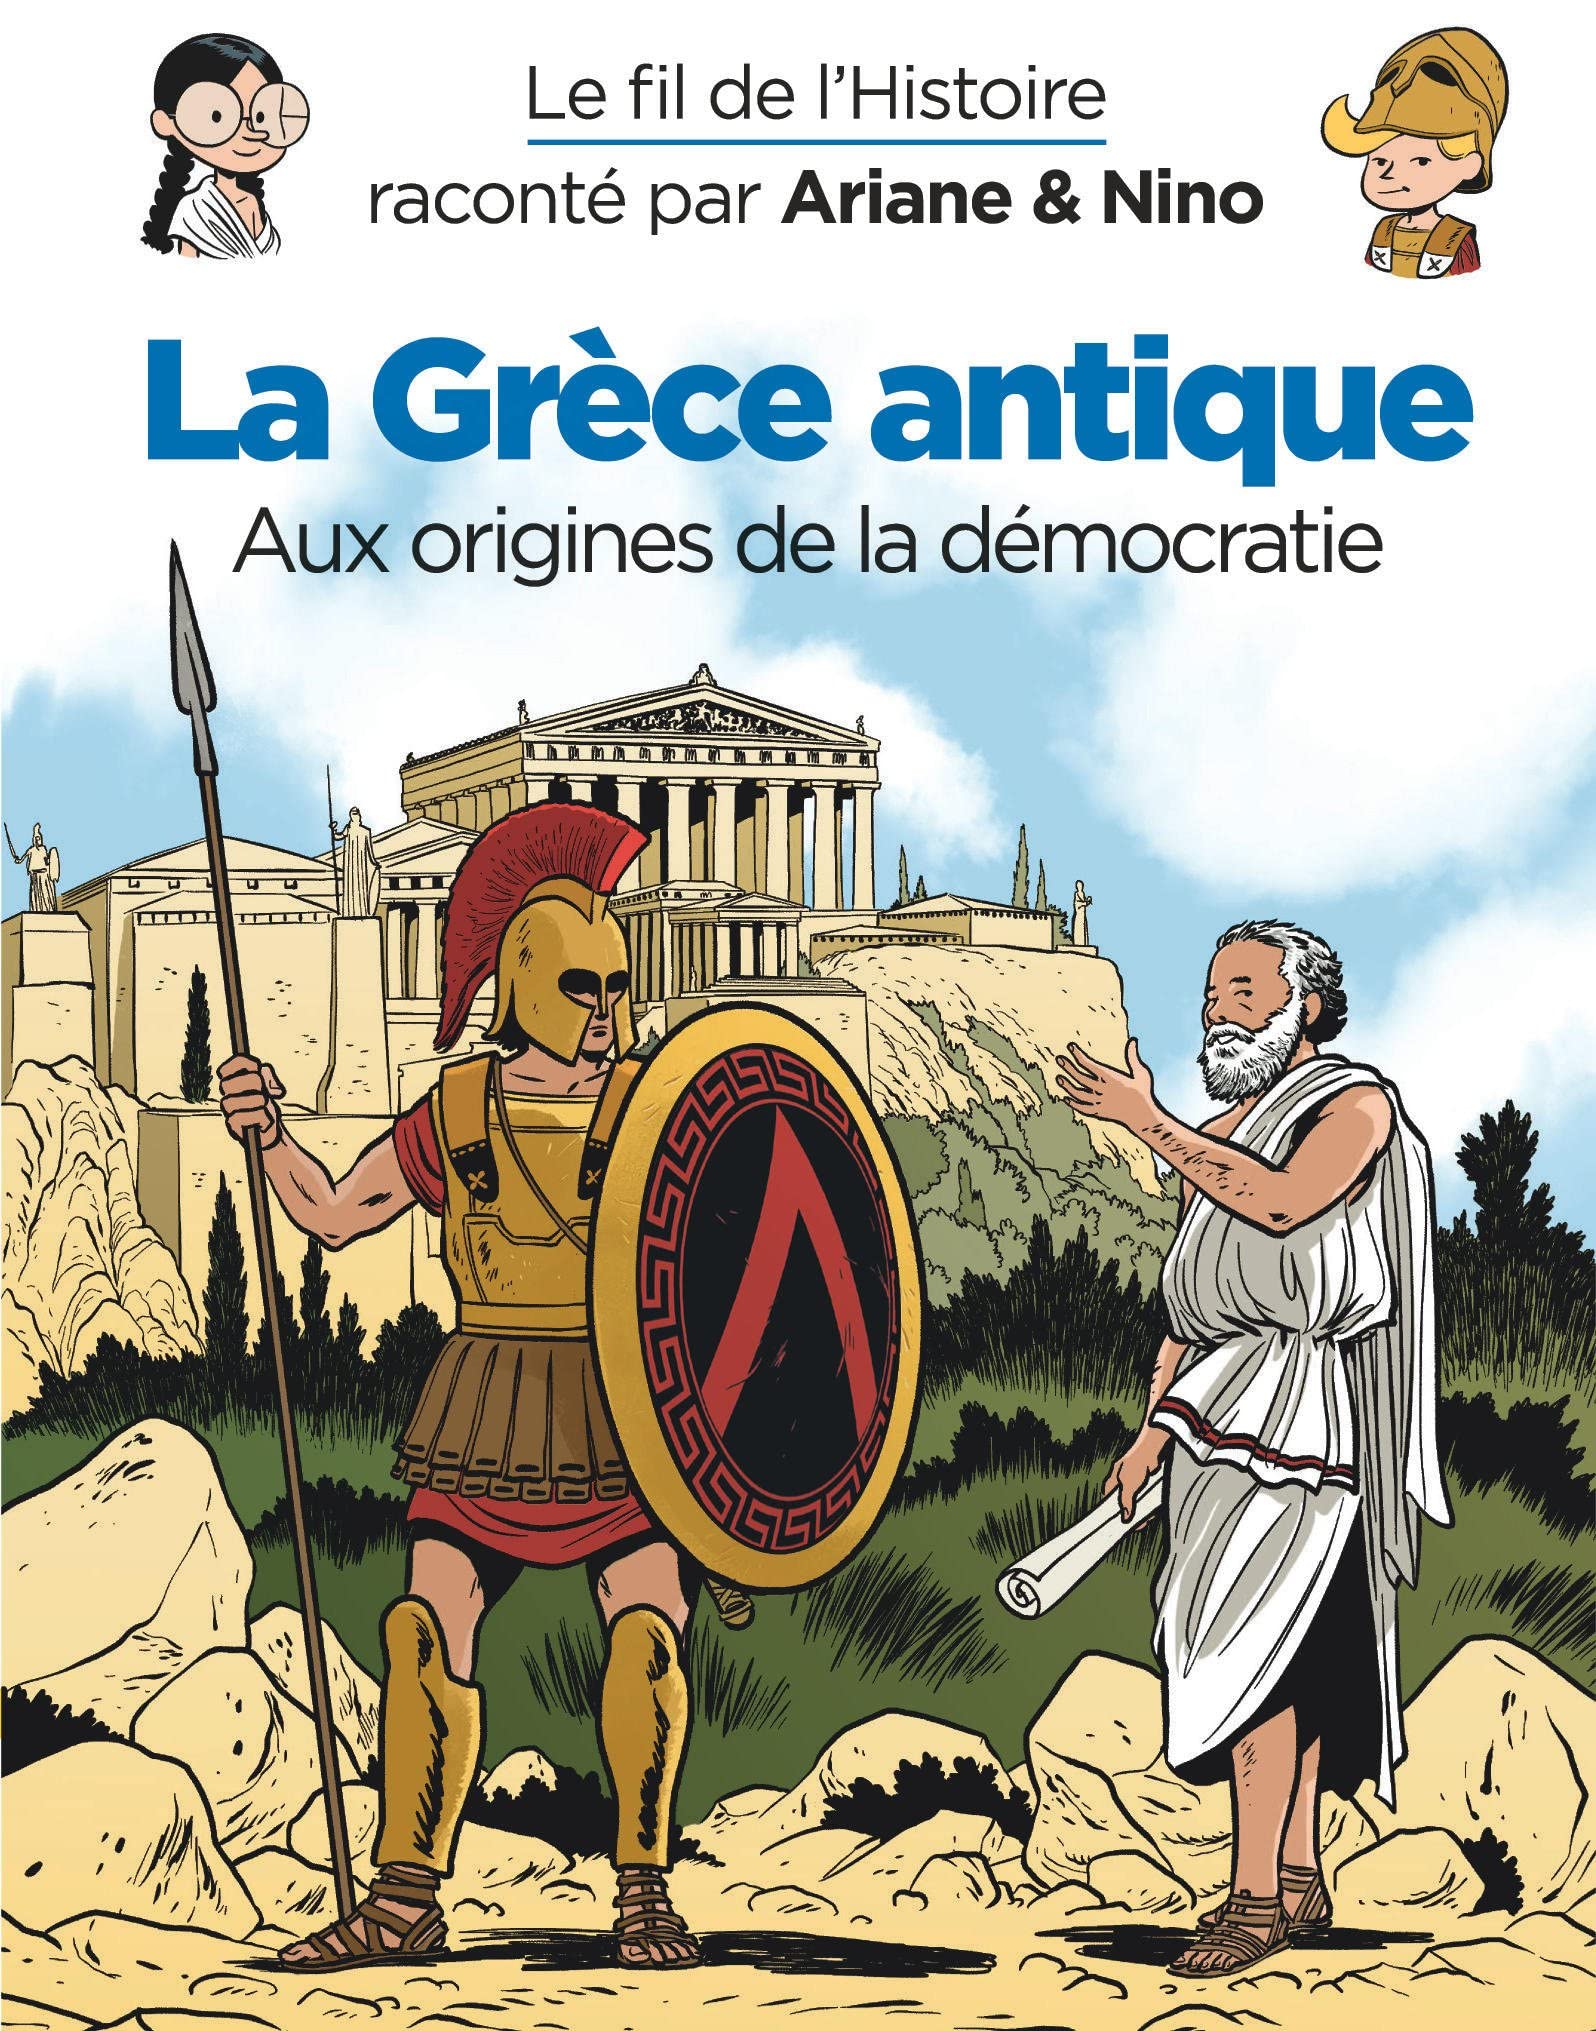 La Grèce antique. Aux origines de la démocratie, (Le fil de l'Histoire raconté par Ariane & Nino), 2022, 48 p. Ouvrage jeunesse à partir de 7 ans.